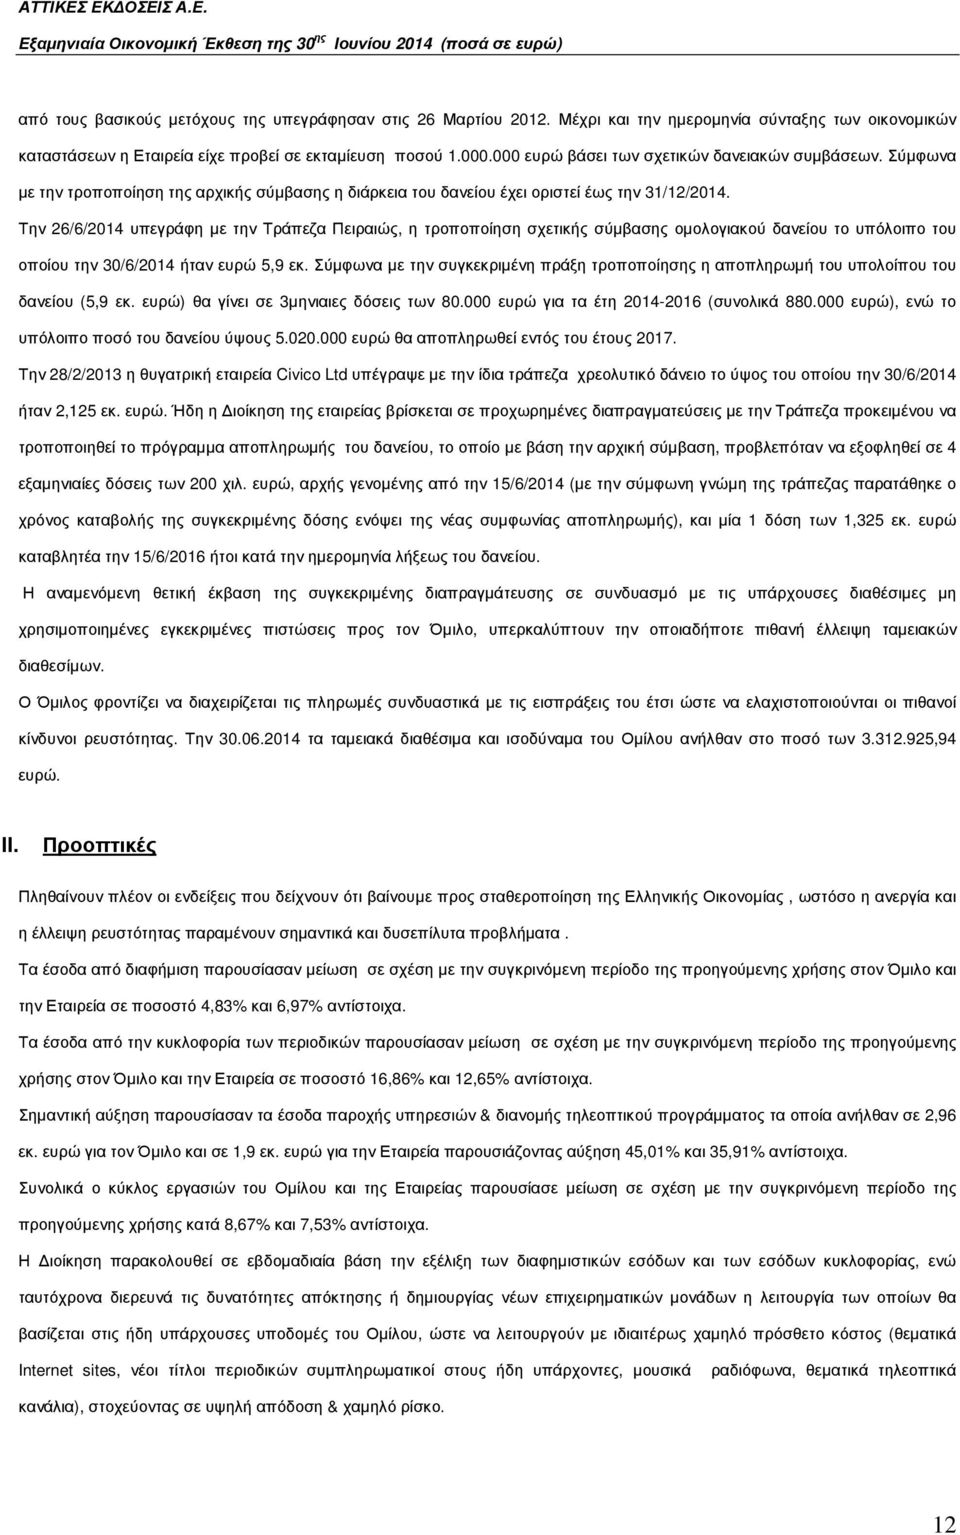 Την 26/6/2014 υπεγράφη µε την Τράπεζα Πειραιώς, η τροποποίηση σχετικής σύµβασης οµολογιακού δανείου το υπόλοιπο του οποίου την 30/6/2014 ήταν ευρώ 5,9 εκ.